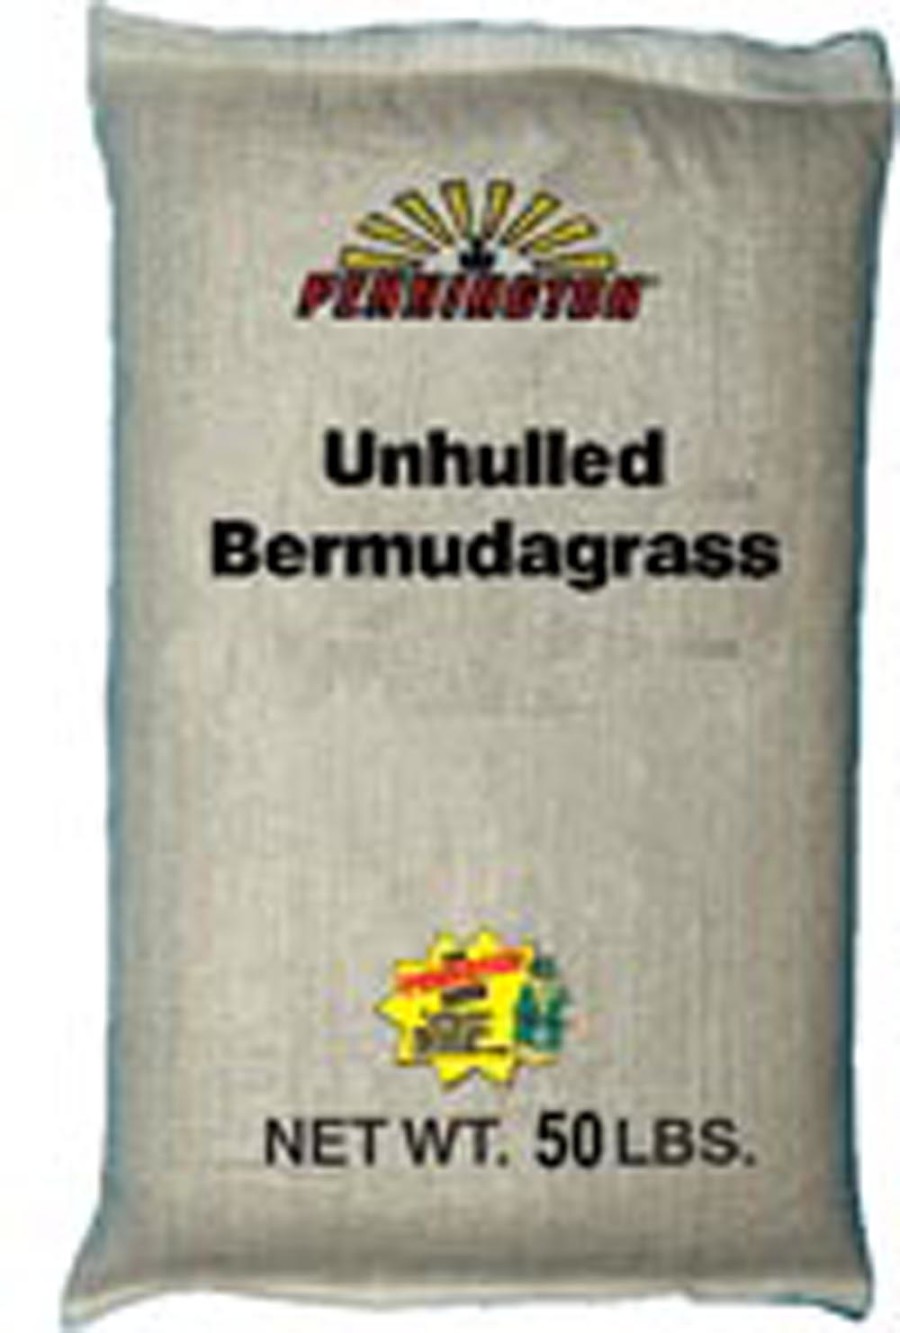 Pennington Bermudagrass Unhulled 40ea/50 lb